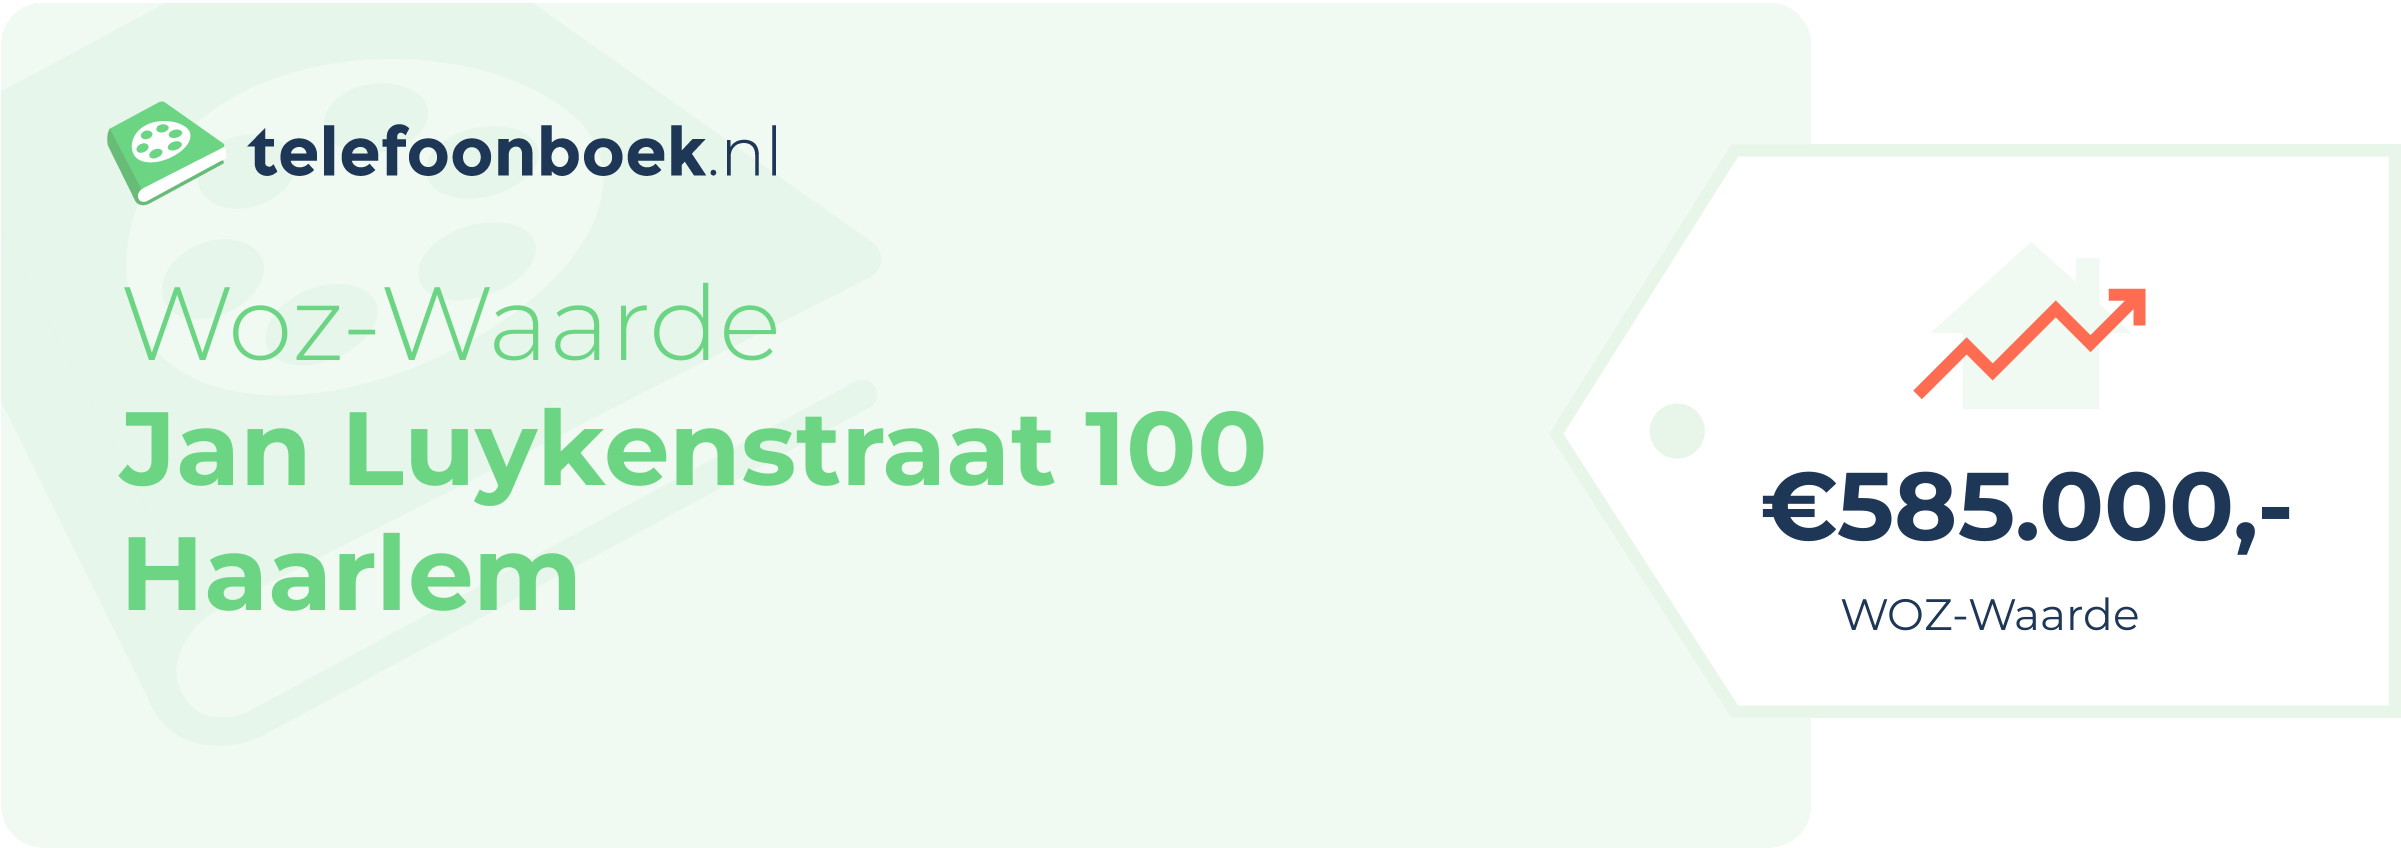 WOZ-waarde Jan Luykenstraat 100 Haarlem